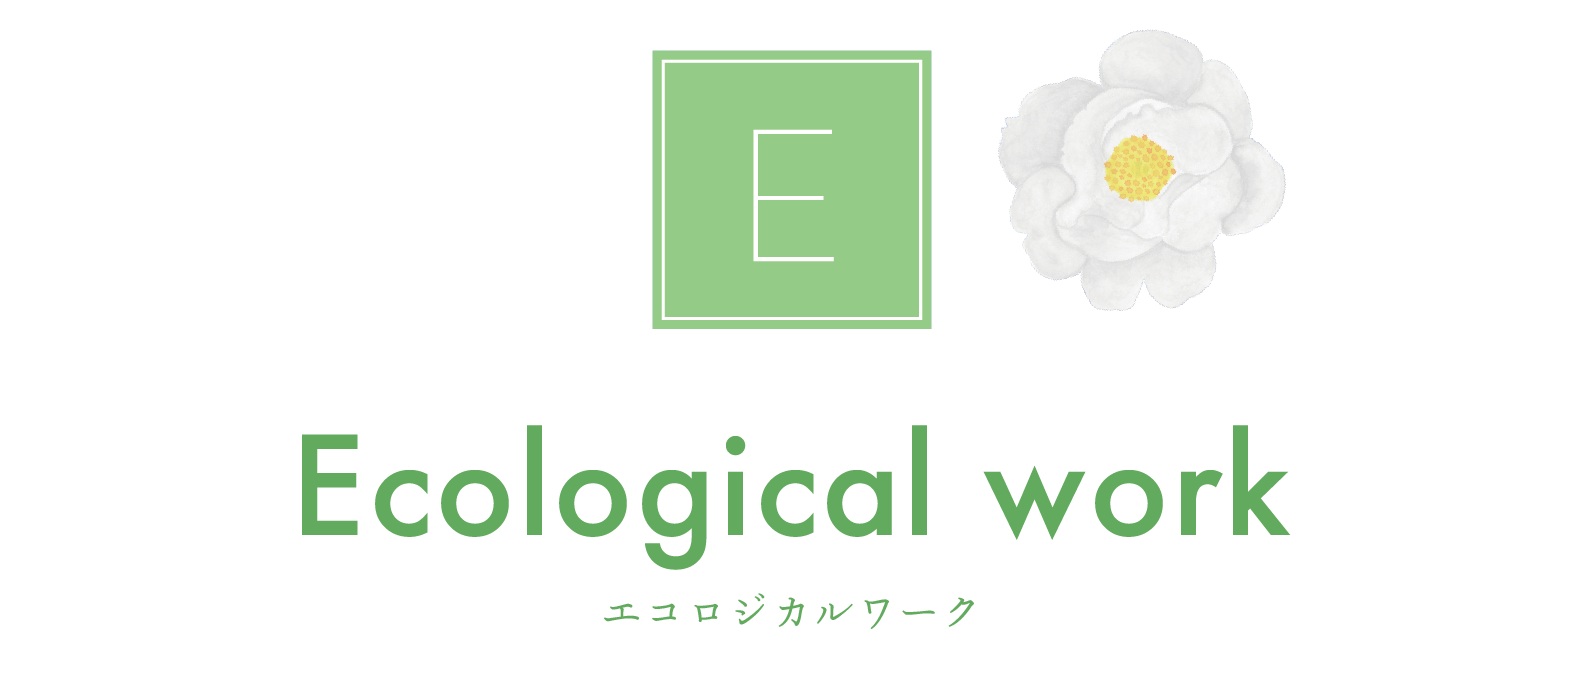 Ecological work エコロジカルワーク